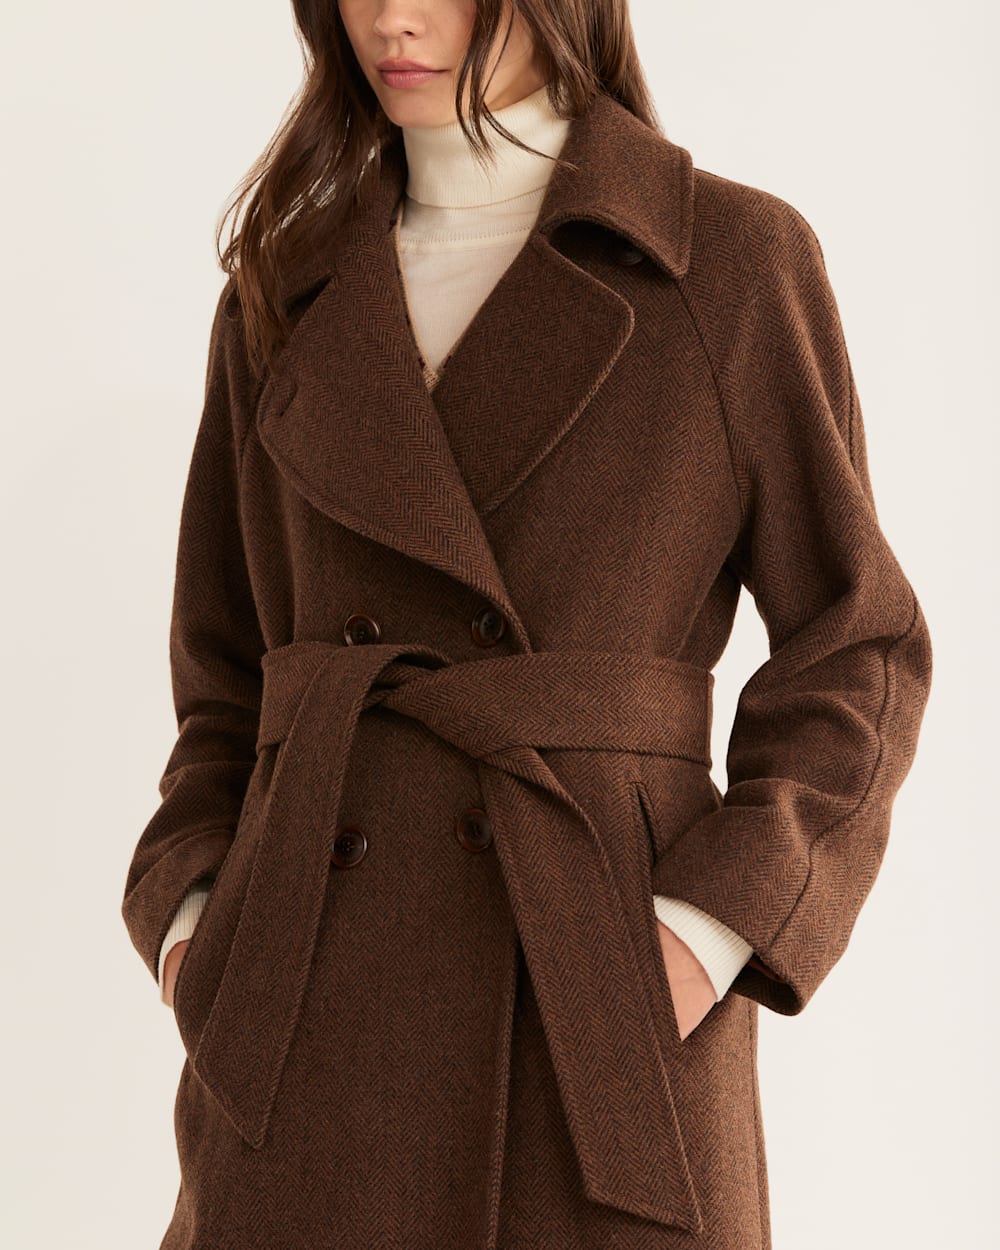 Look Stylish & Feel Cozy in Women's Uptown Long Wool Coat | Pendleton